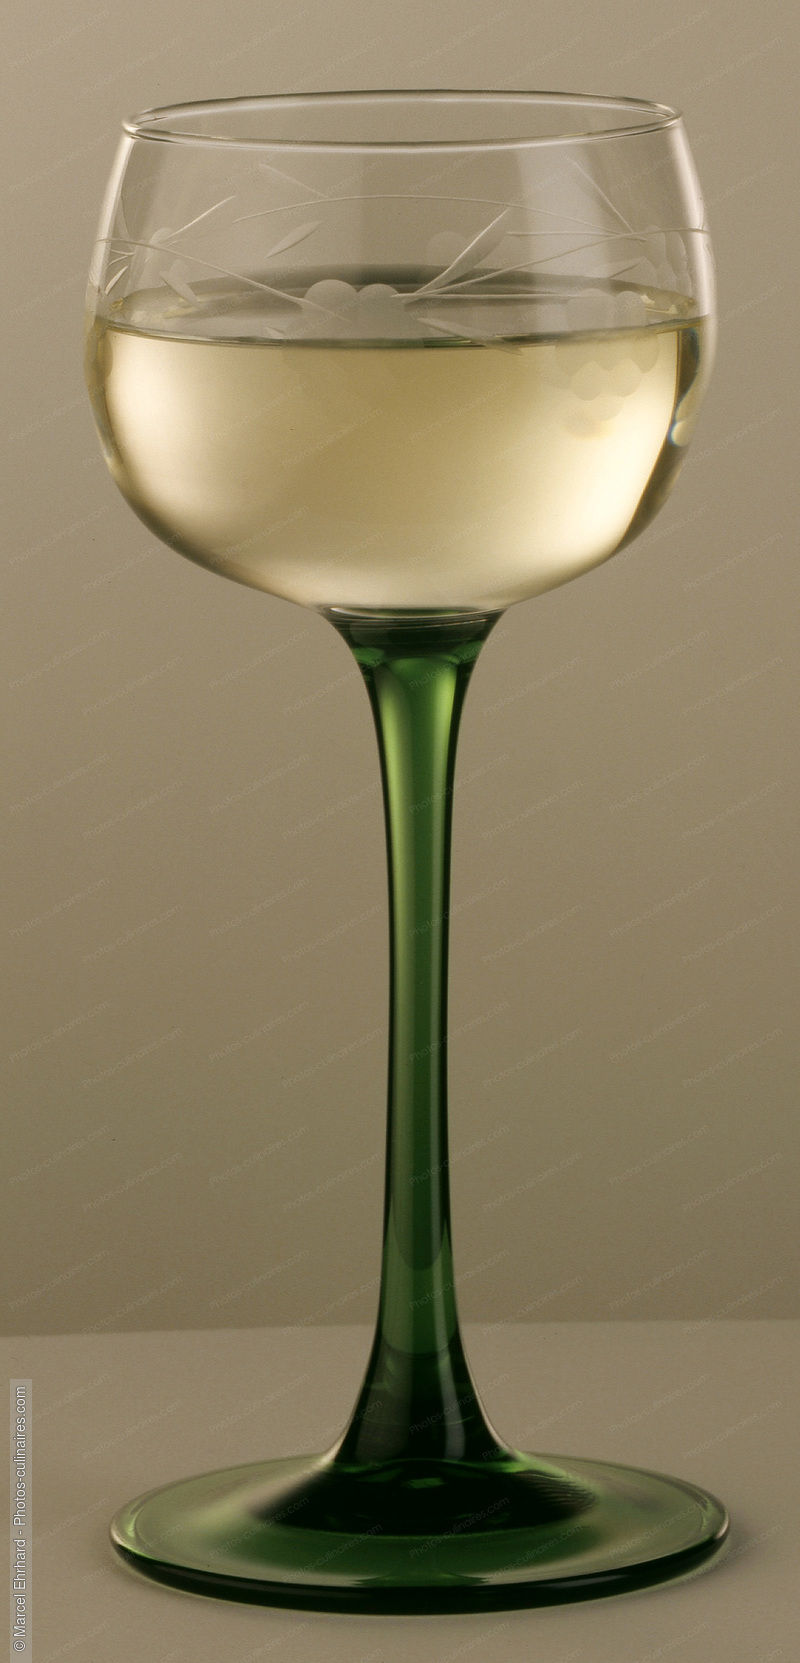 Verre de vin blanc d'alsace - photo référence BO28.jpg